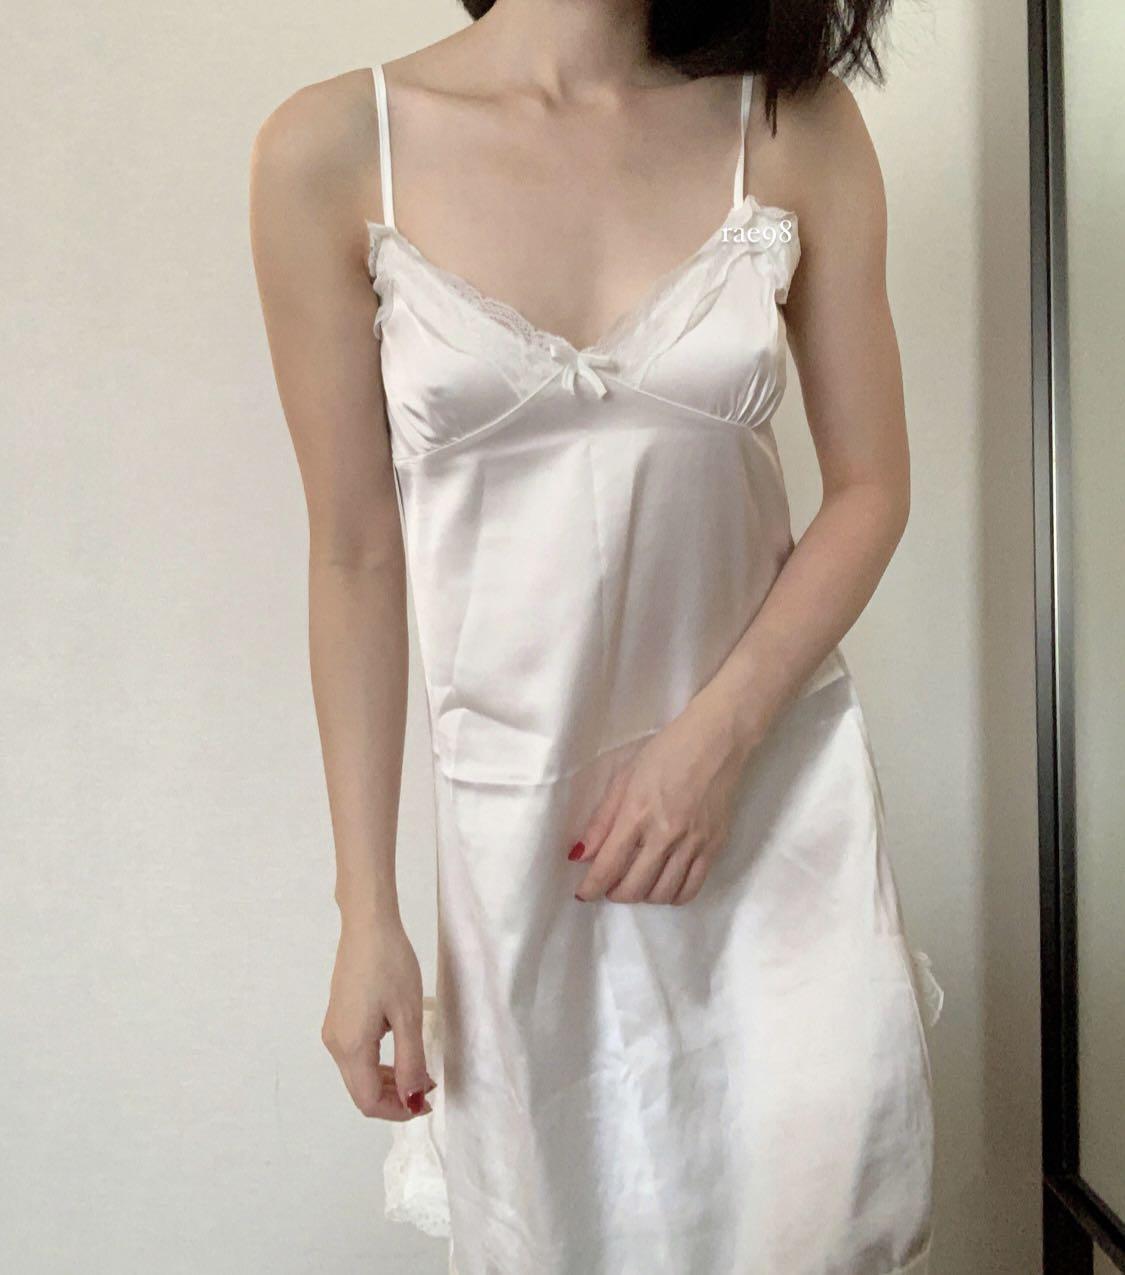 white_satin_nightgown_dress_1654224775_b1d1747e_progressive.jpg